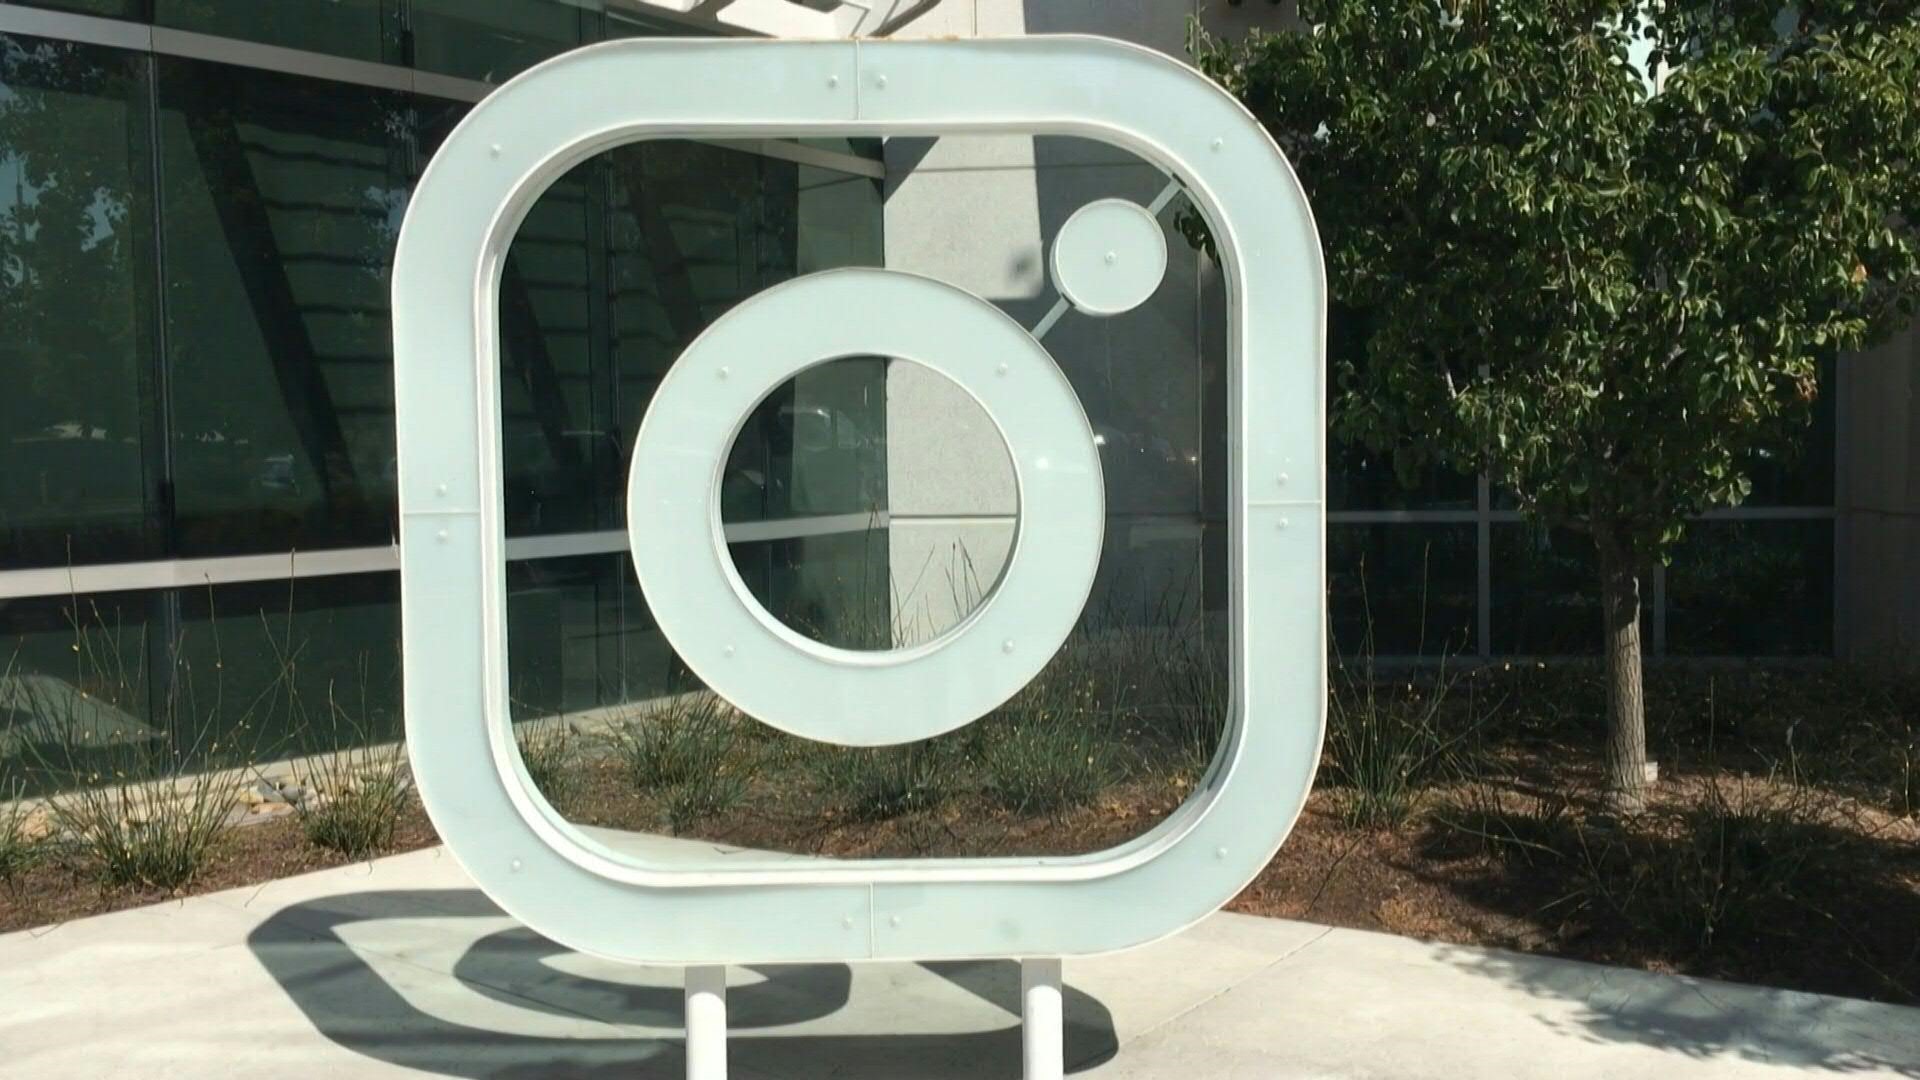 Instagram detendrá la implementación de funcionalidades que los usuarios han rechazado bajo el reclamo de que la red social quiere parecerse demasiado a TikTok, según un informe del boletín tecnológico Platformer.